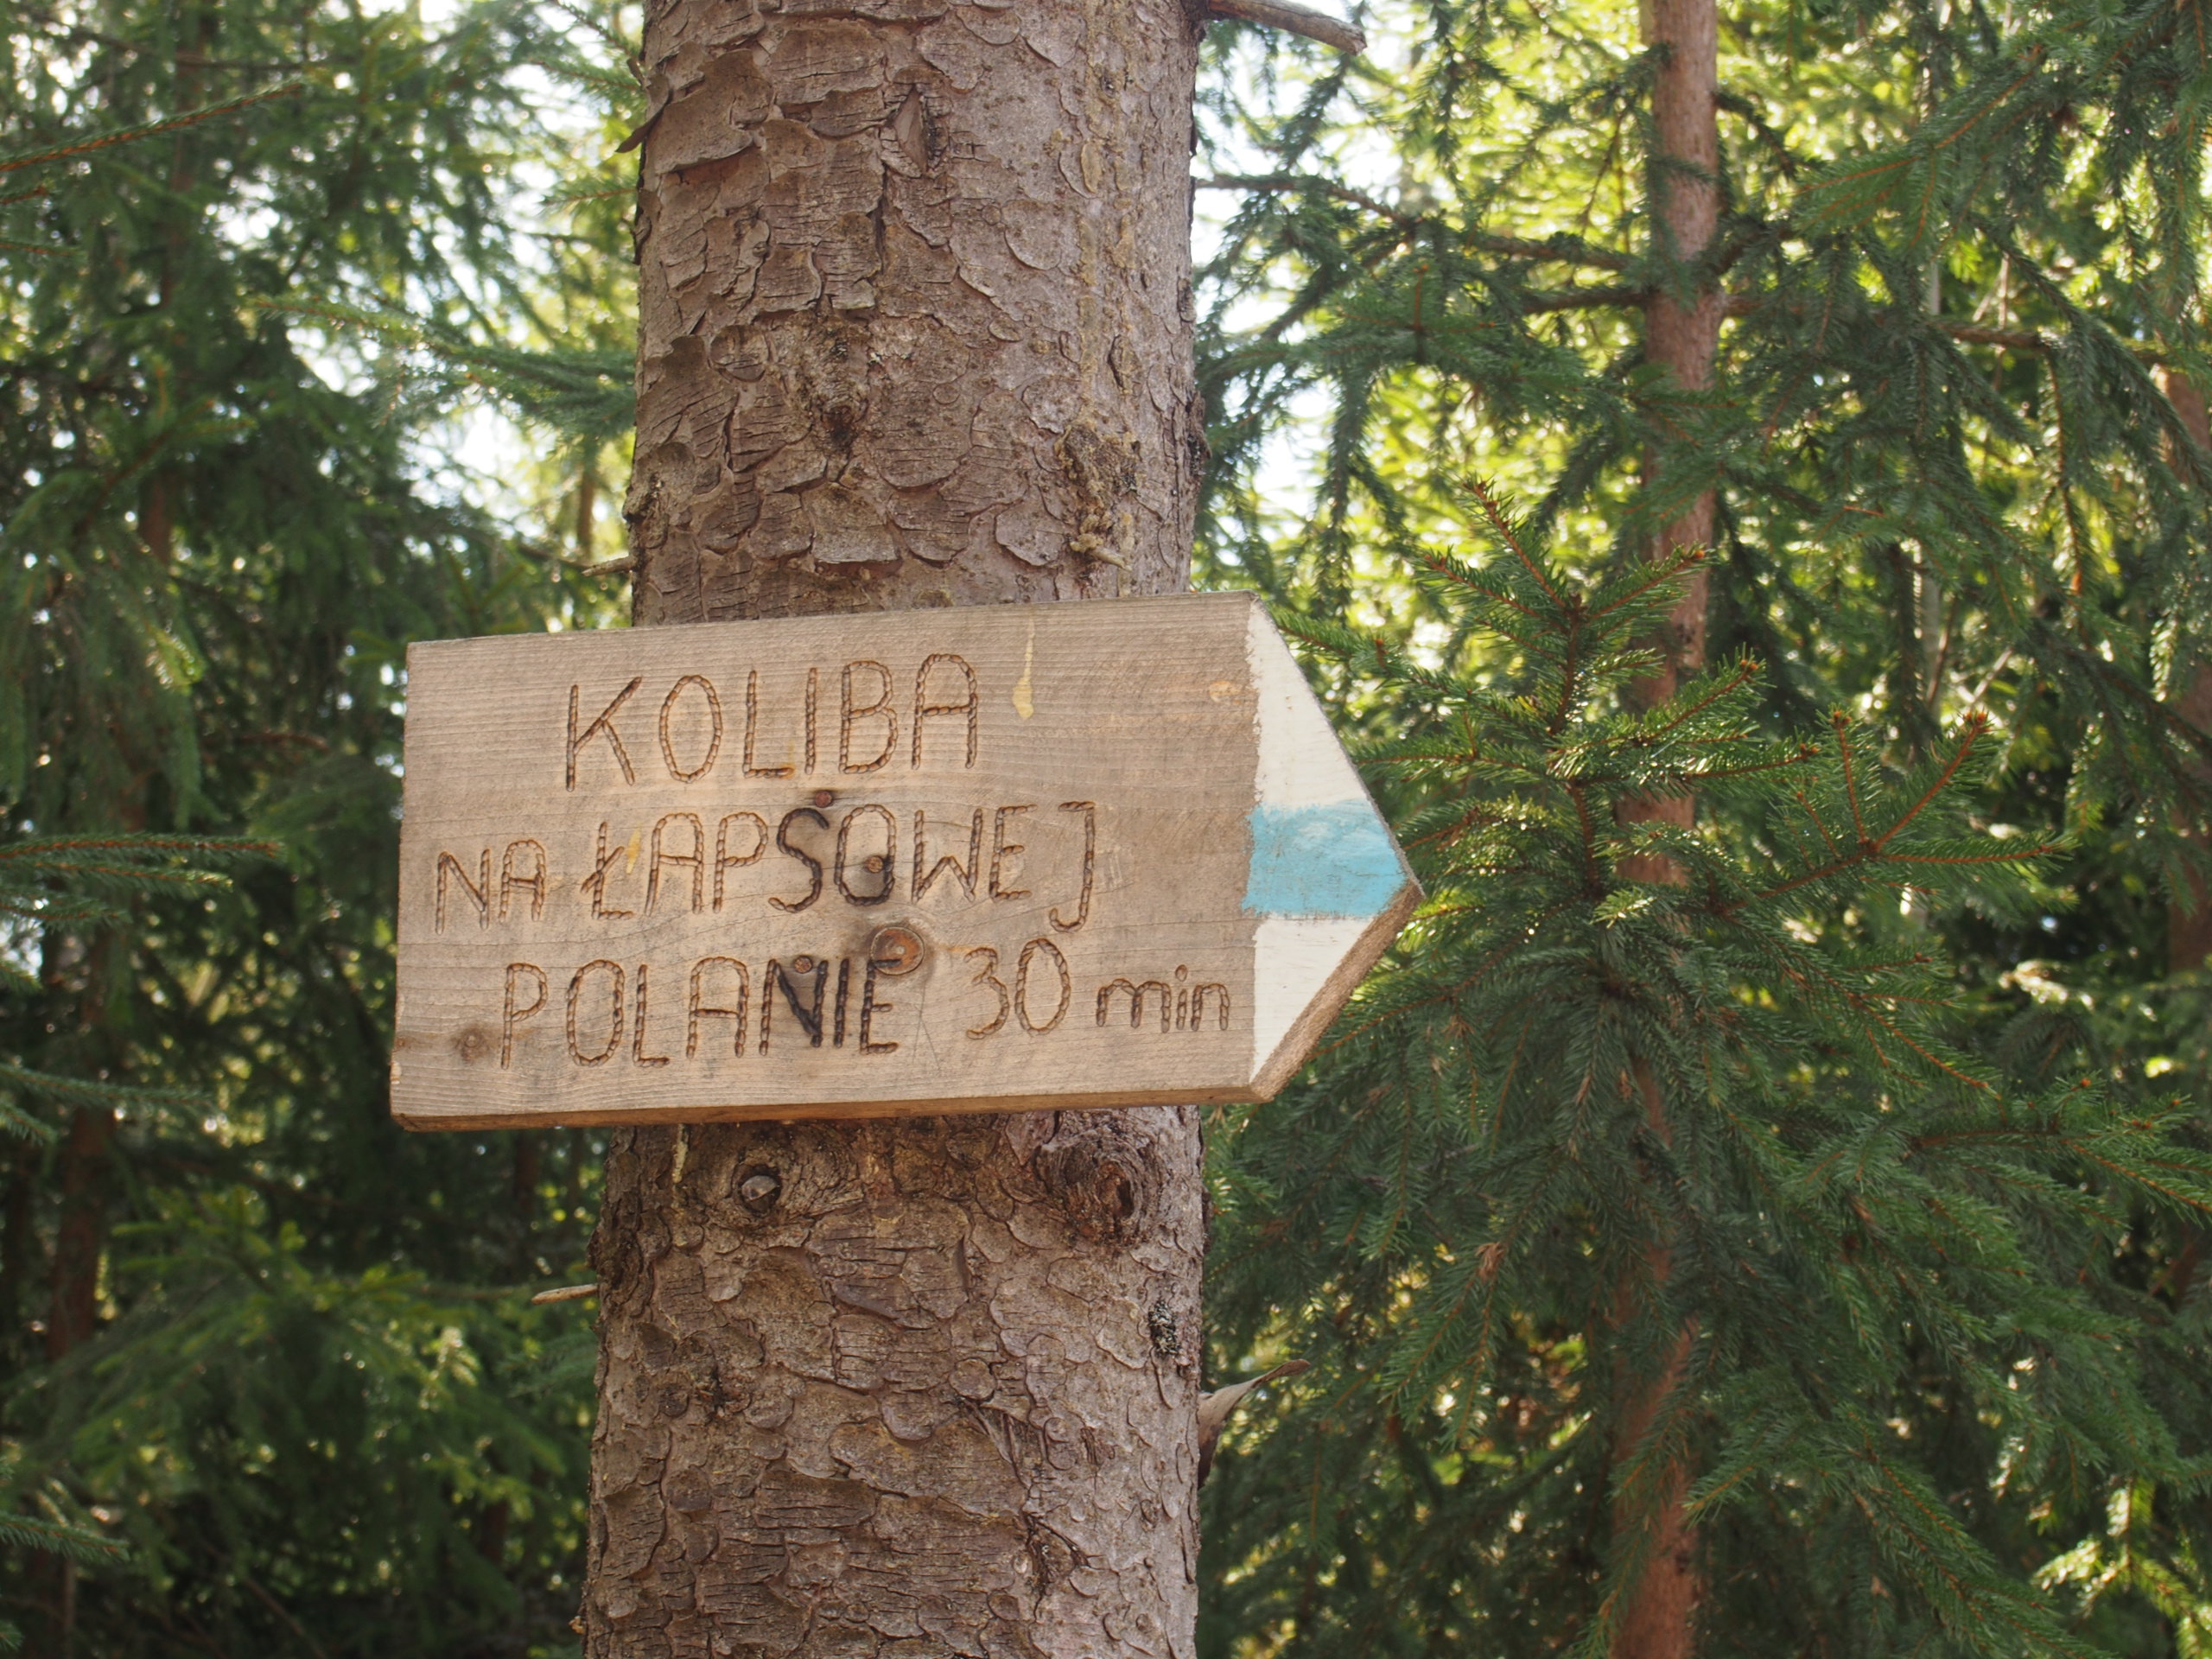 Tabliczna z niebieskim szlakiem turystycznym - Koliba na Łapsowej Polanie 30 min